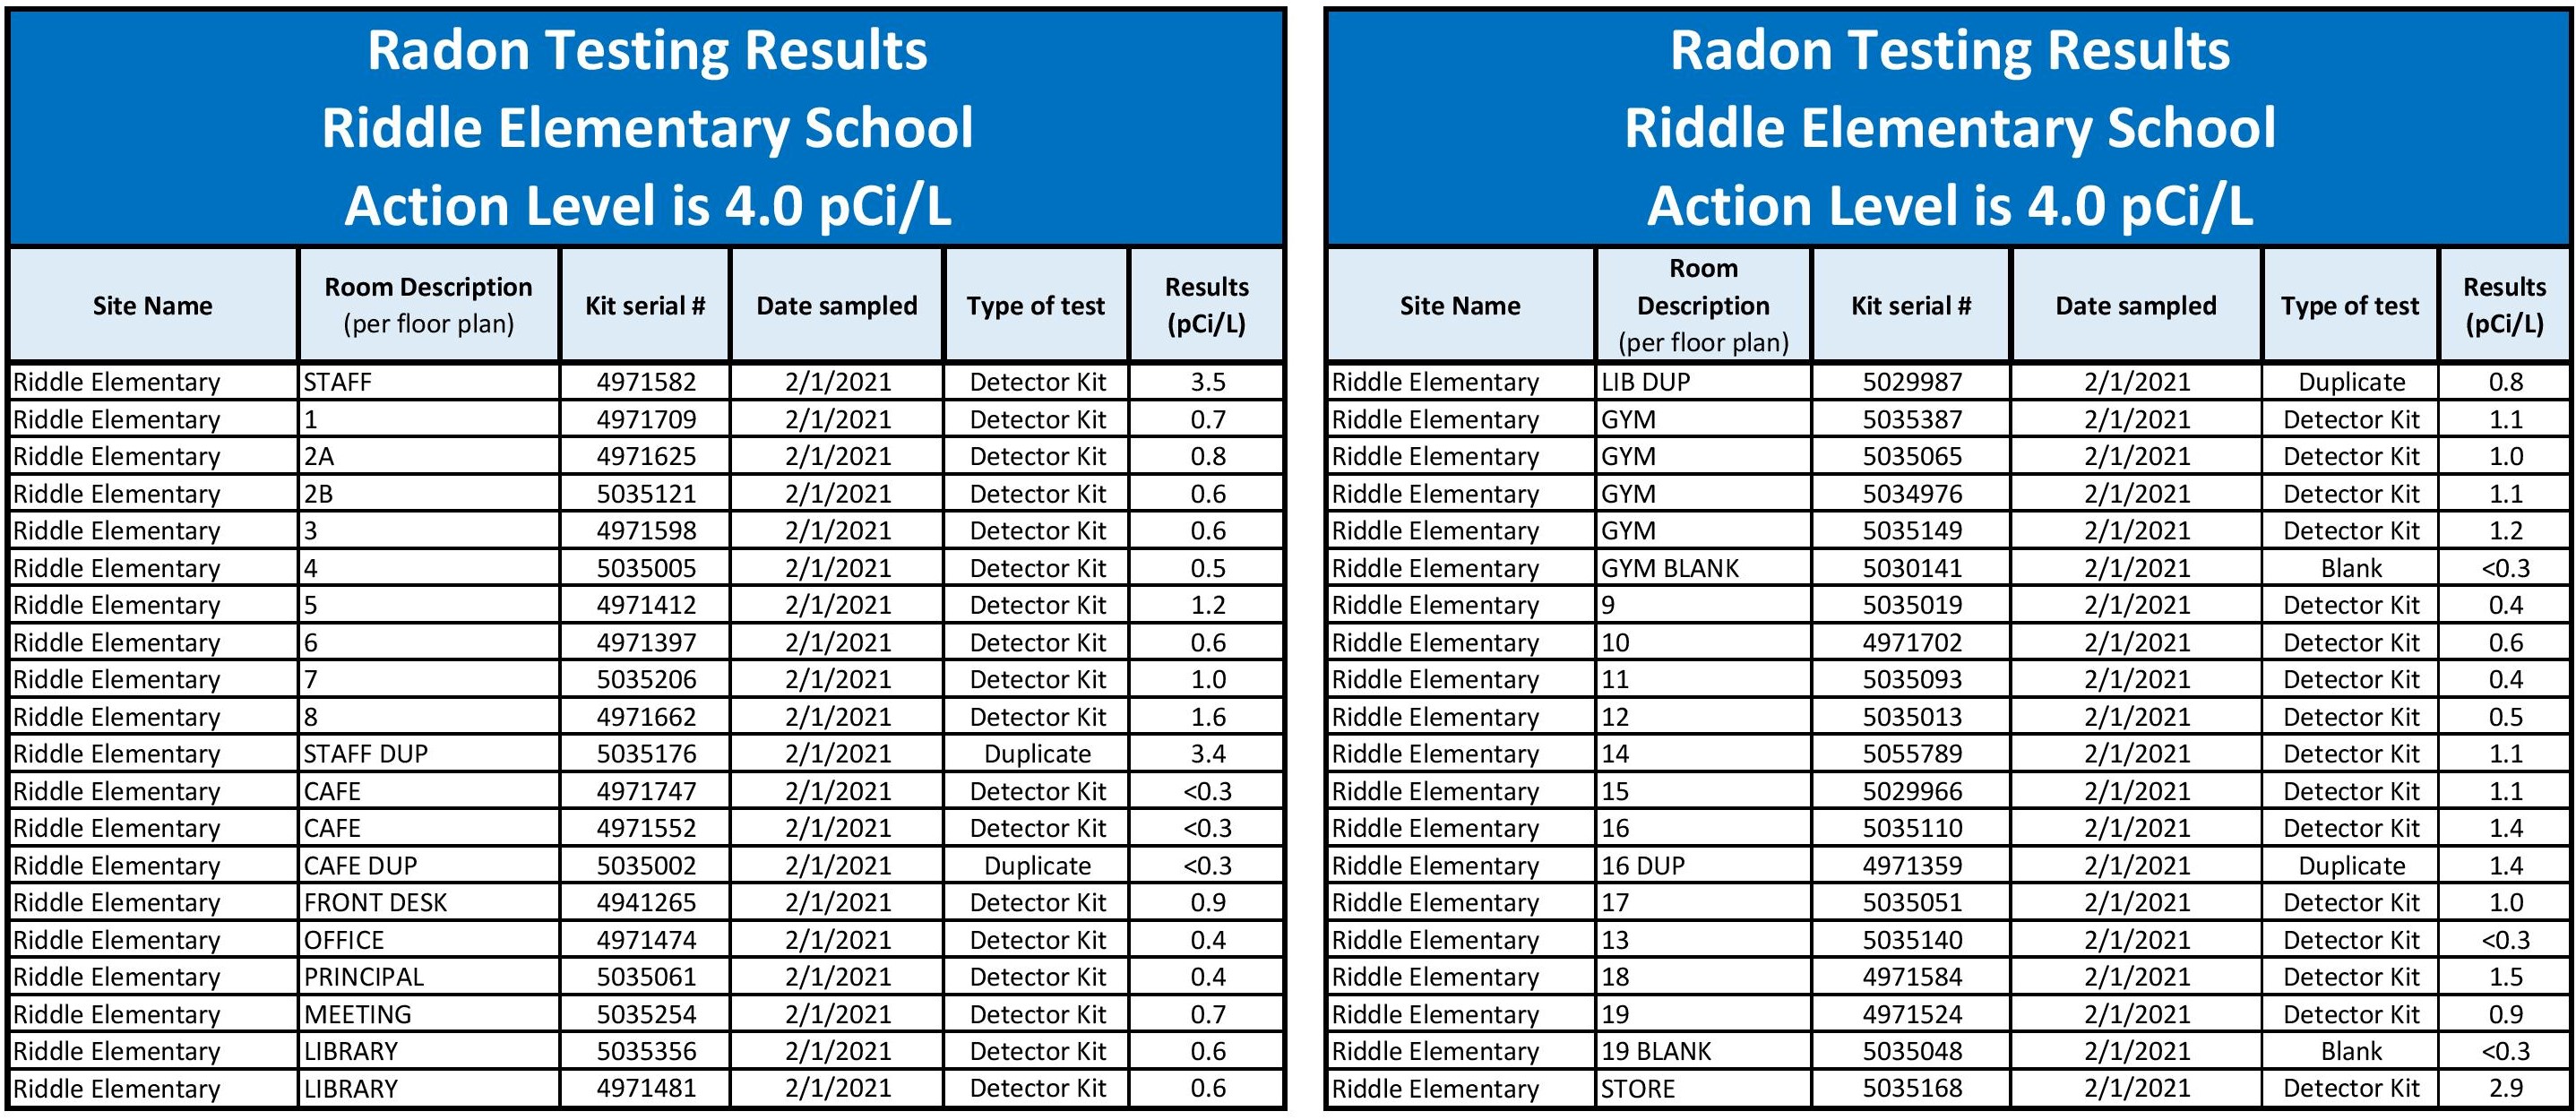 RES Radon Testing Results 2021